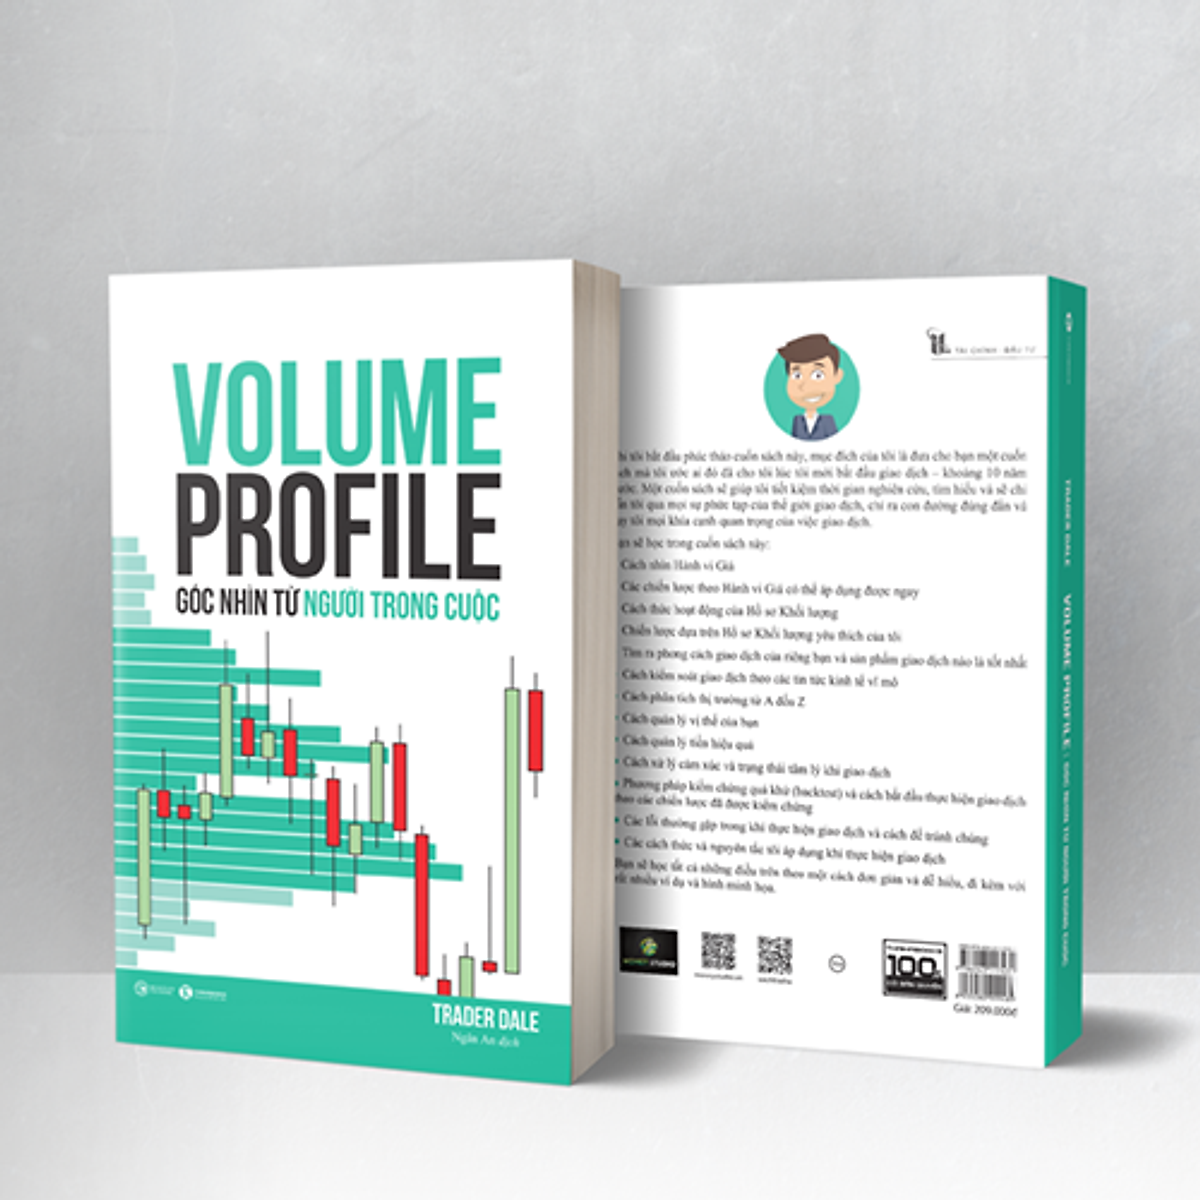 Volume Profile - Góc Nhìn Từ Người Trong Cuộc PDF: Hiểu Để Thành Công Trong Giao Dịch